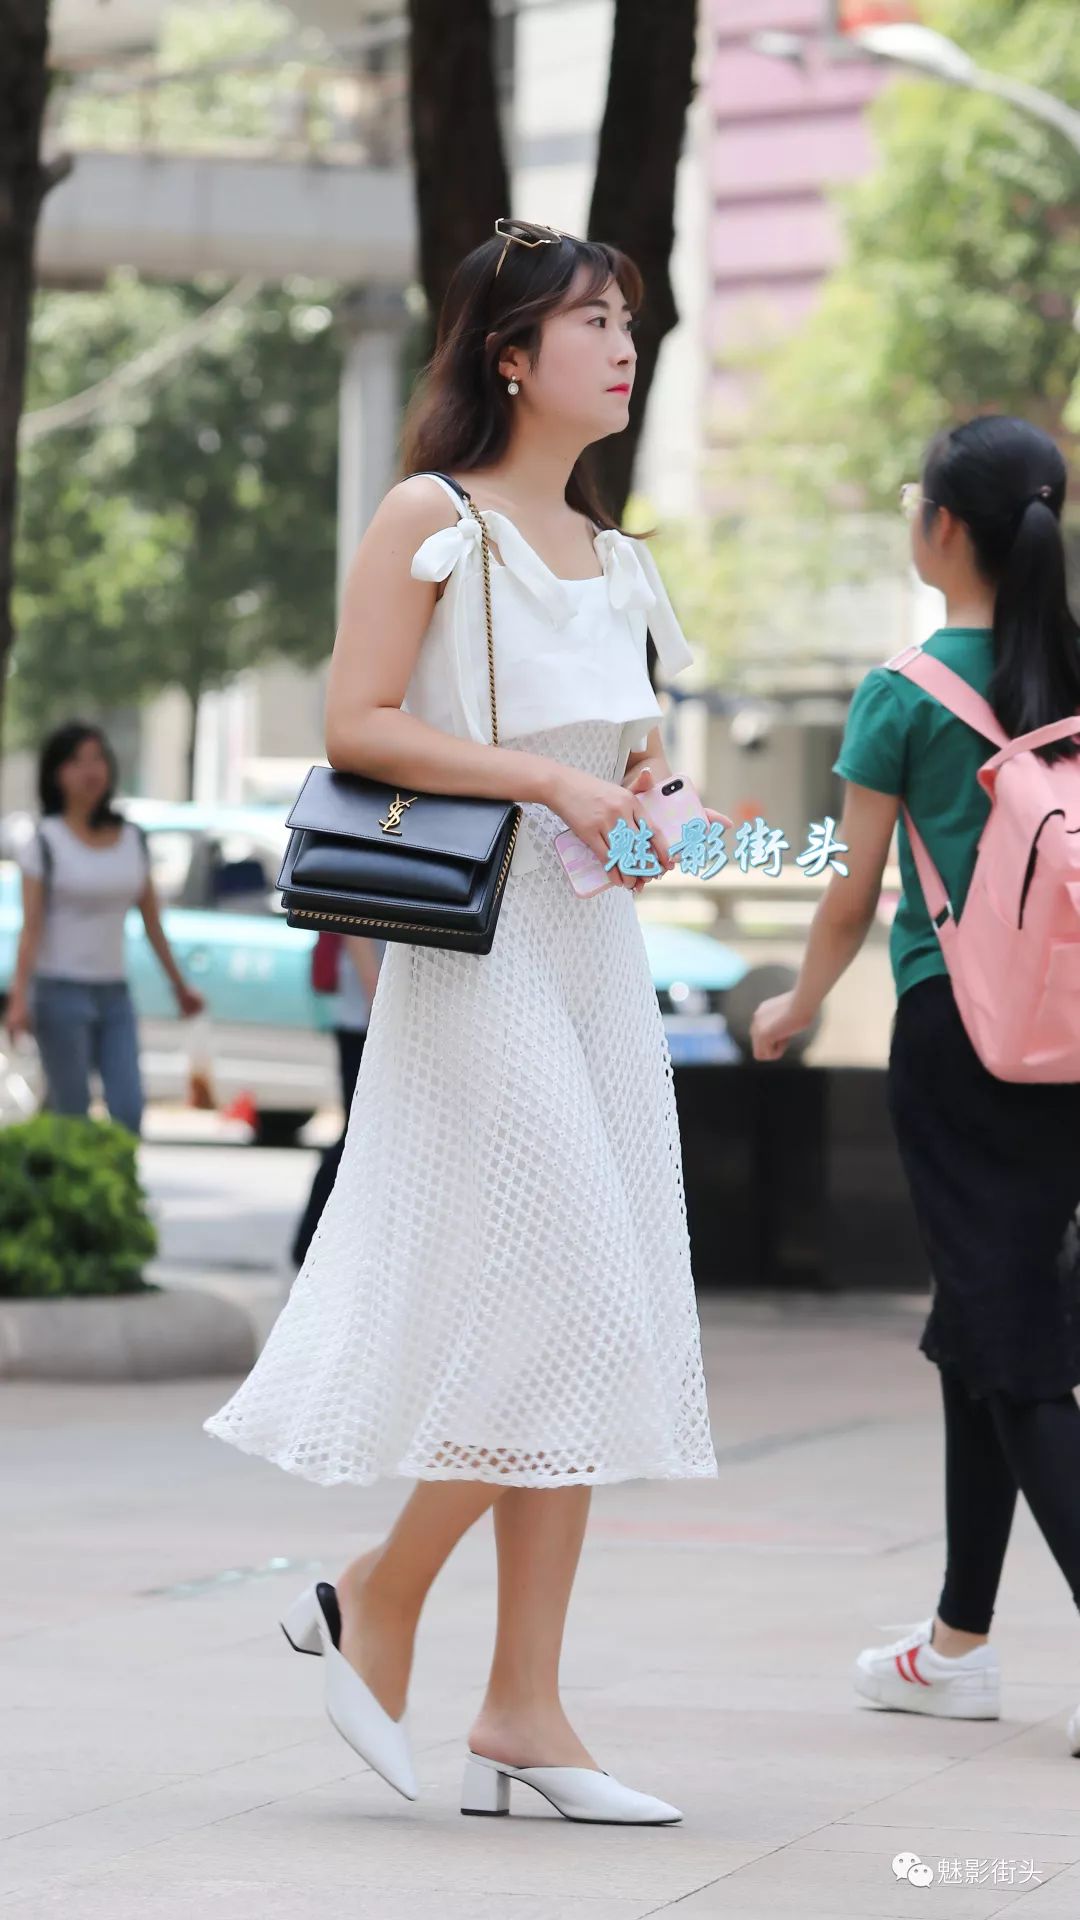 美女穿白色连衣裙搭配白色穆勒鞋,展现了清透纯美的知性美感